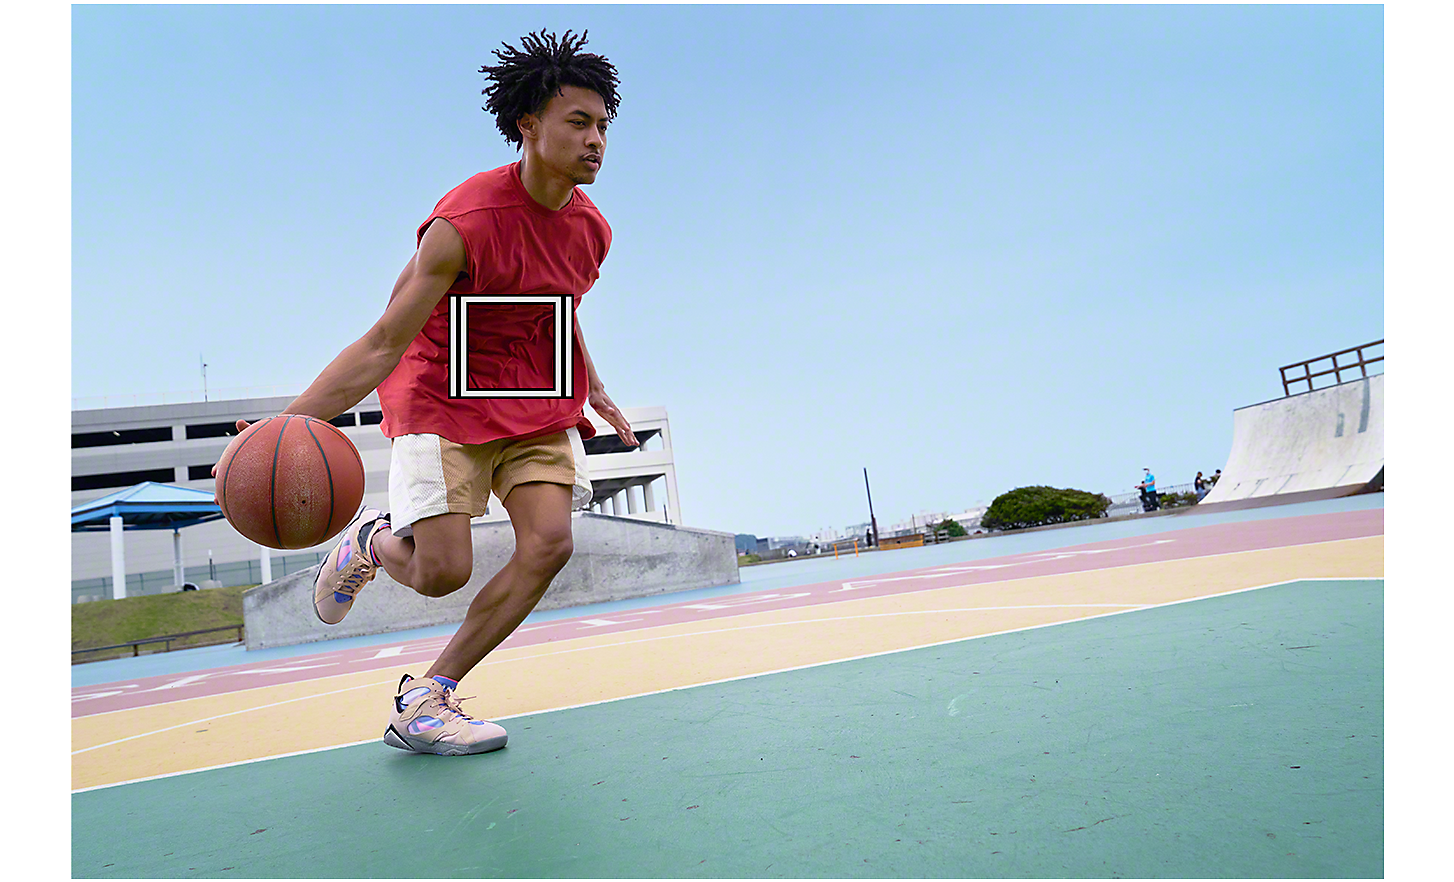 Mann dribbelt Basketball, Objektverfolgung wird durch ein weißes Quadrat dargestellt